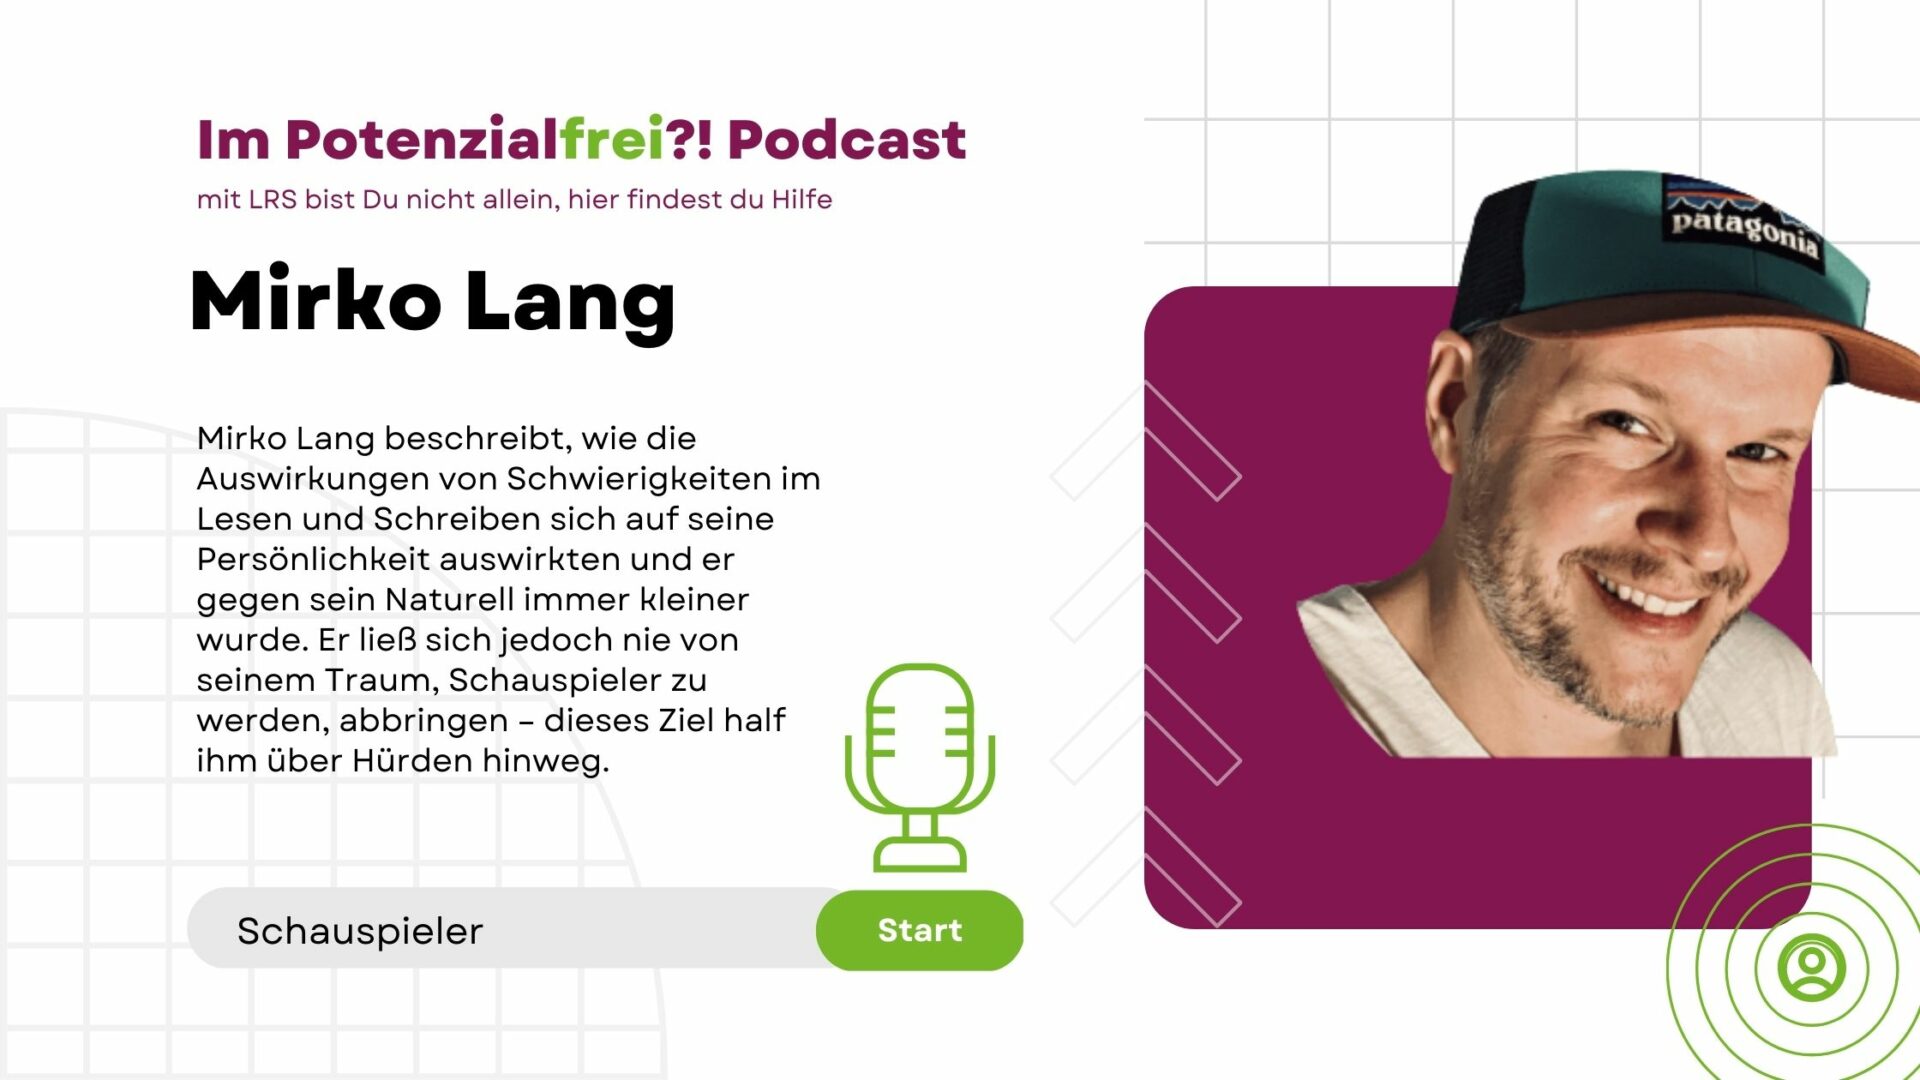 Mirko Lang, Schauspieler, im Potenzialfrei! Podcast